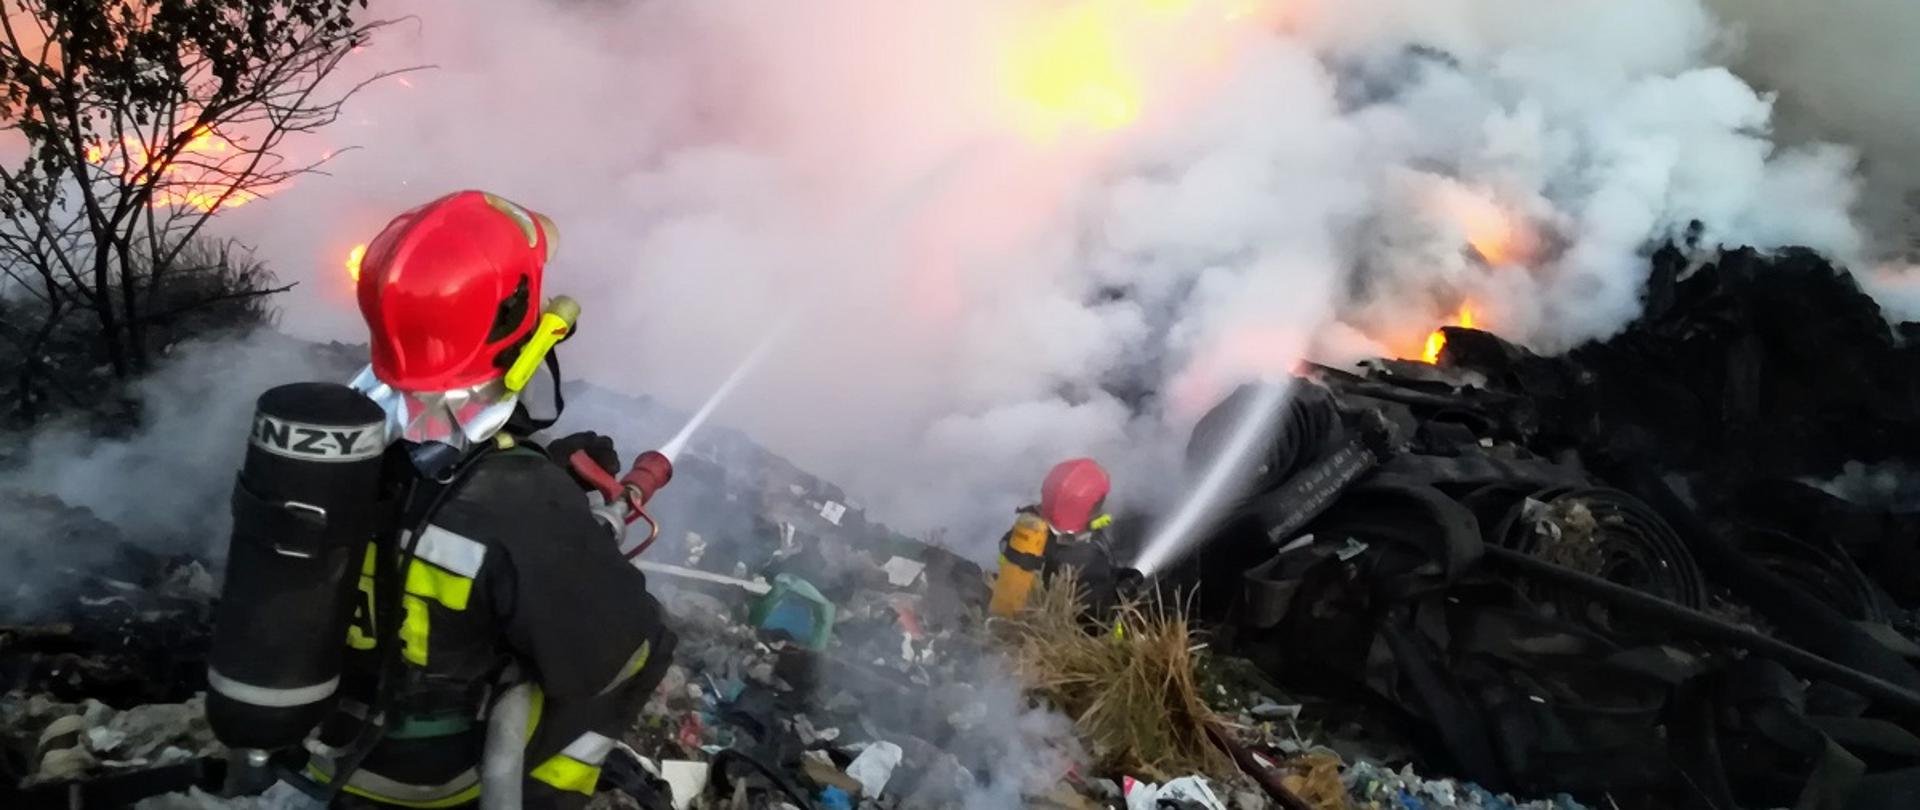 Dwóch strażaków w ubraniach specjalnych, chełmach oraz z butlami na plecach gaszący palącą się hałdę śmieci